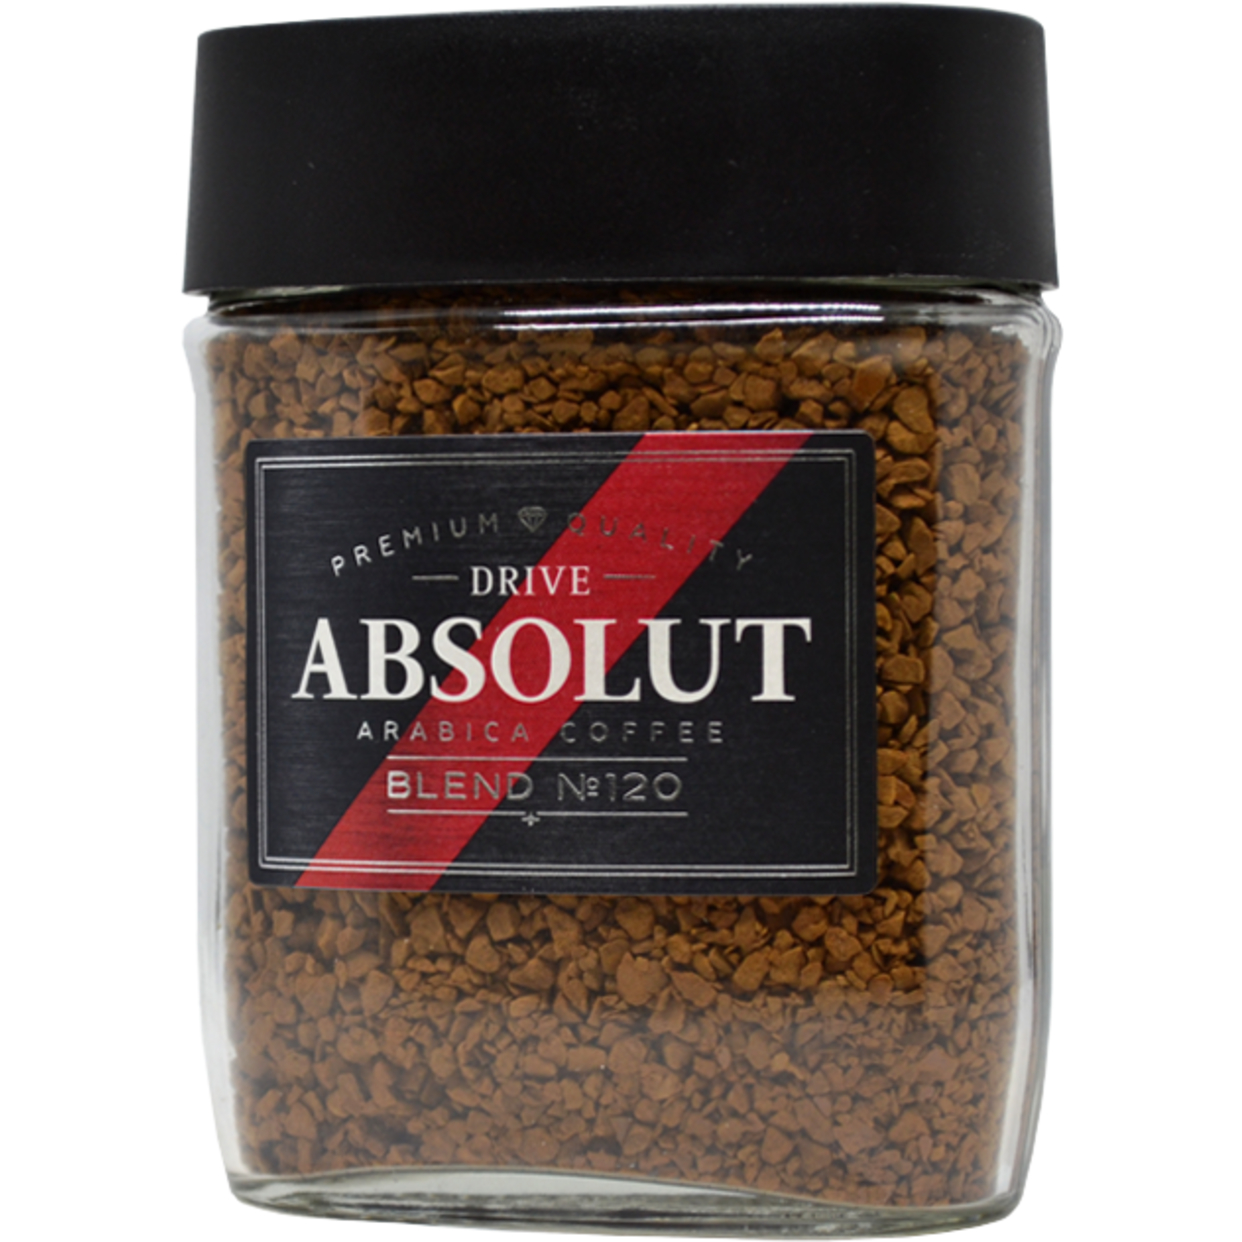 Кофе растворимый сублимированный Absolut Drive: blend №120, ст/б 95 г. по акции в Пятерочке